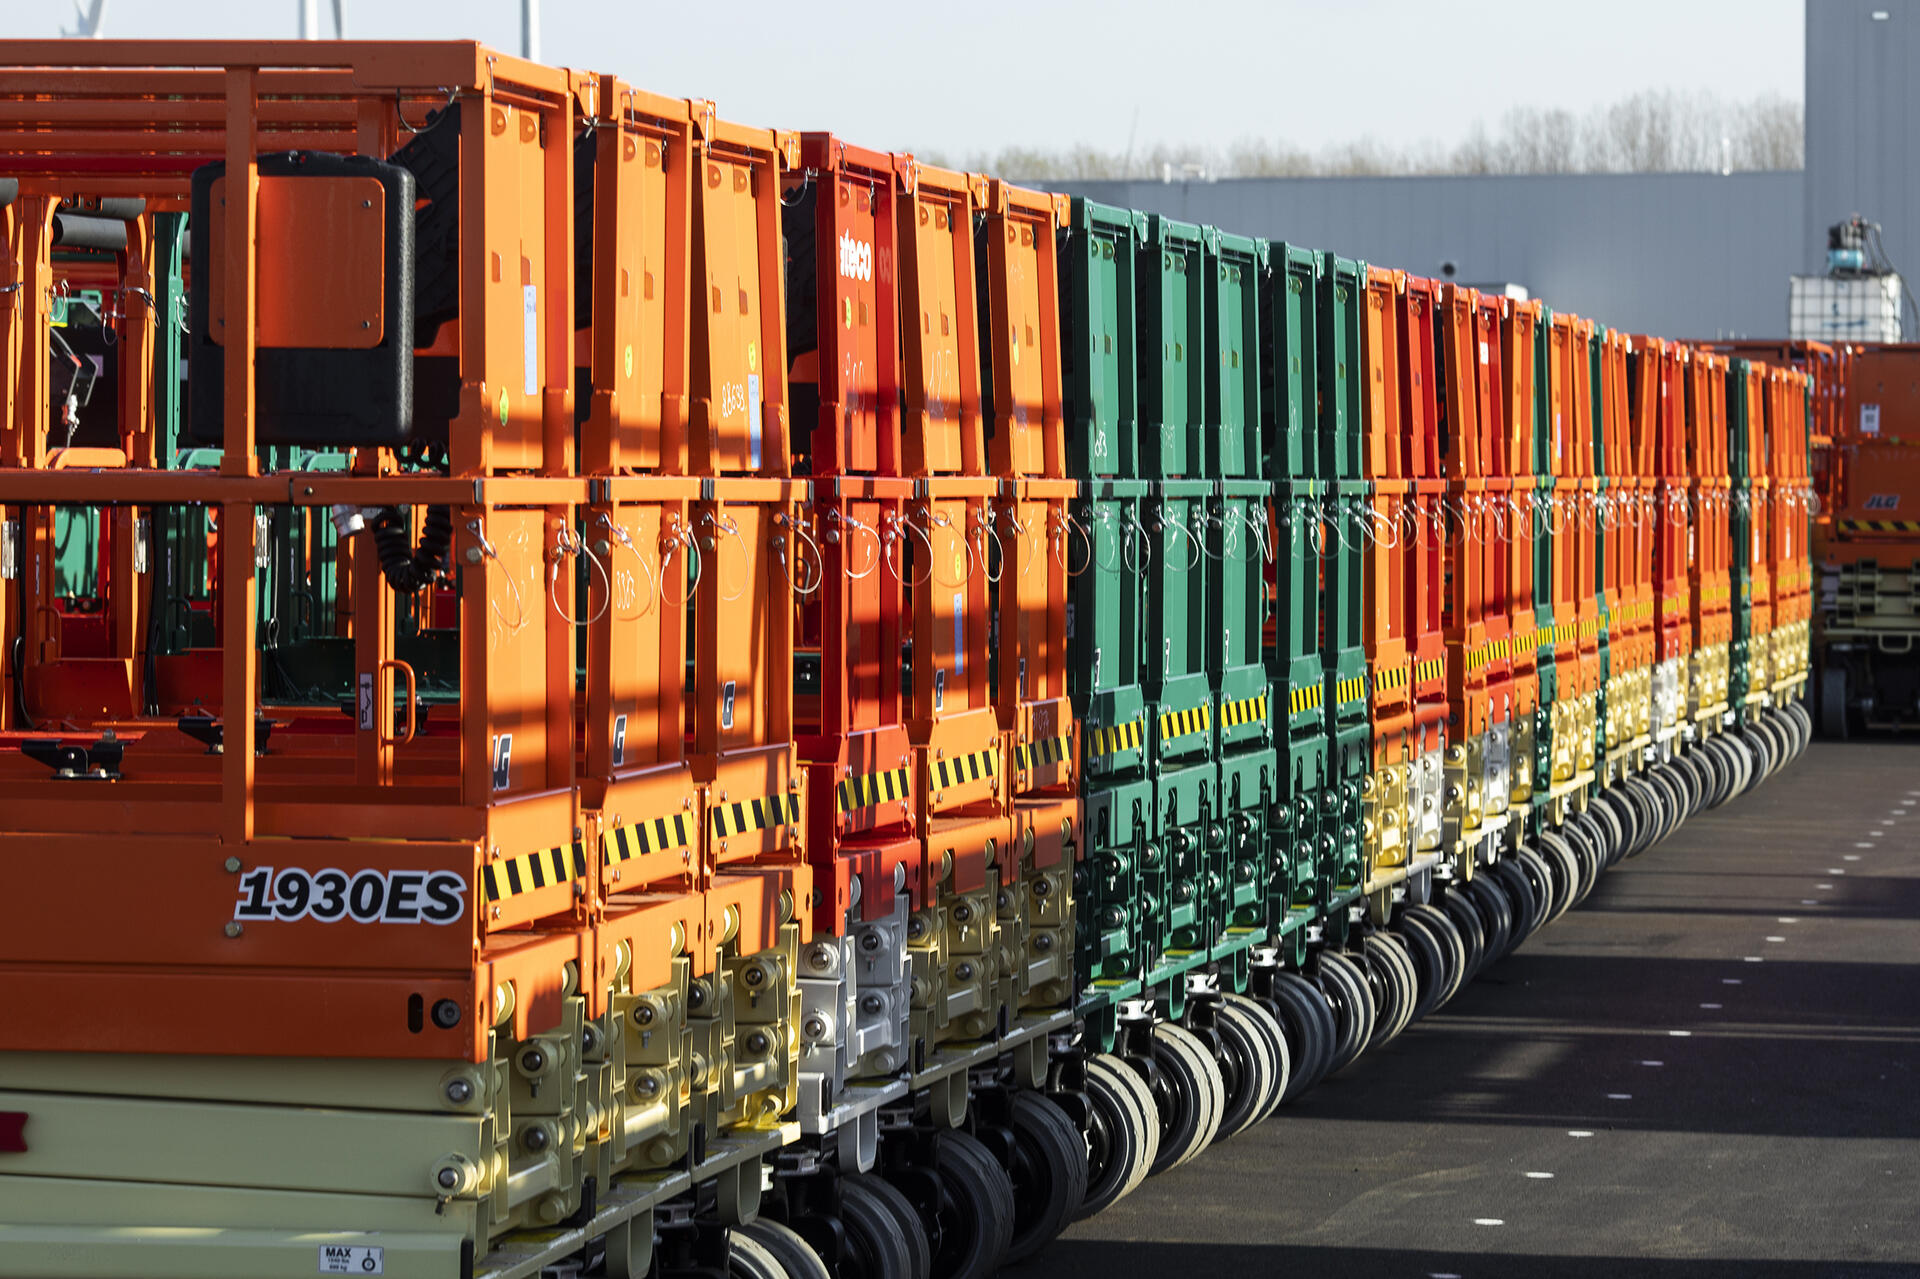 Aertssen Logistics Behandeling Cargo